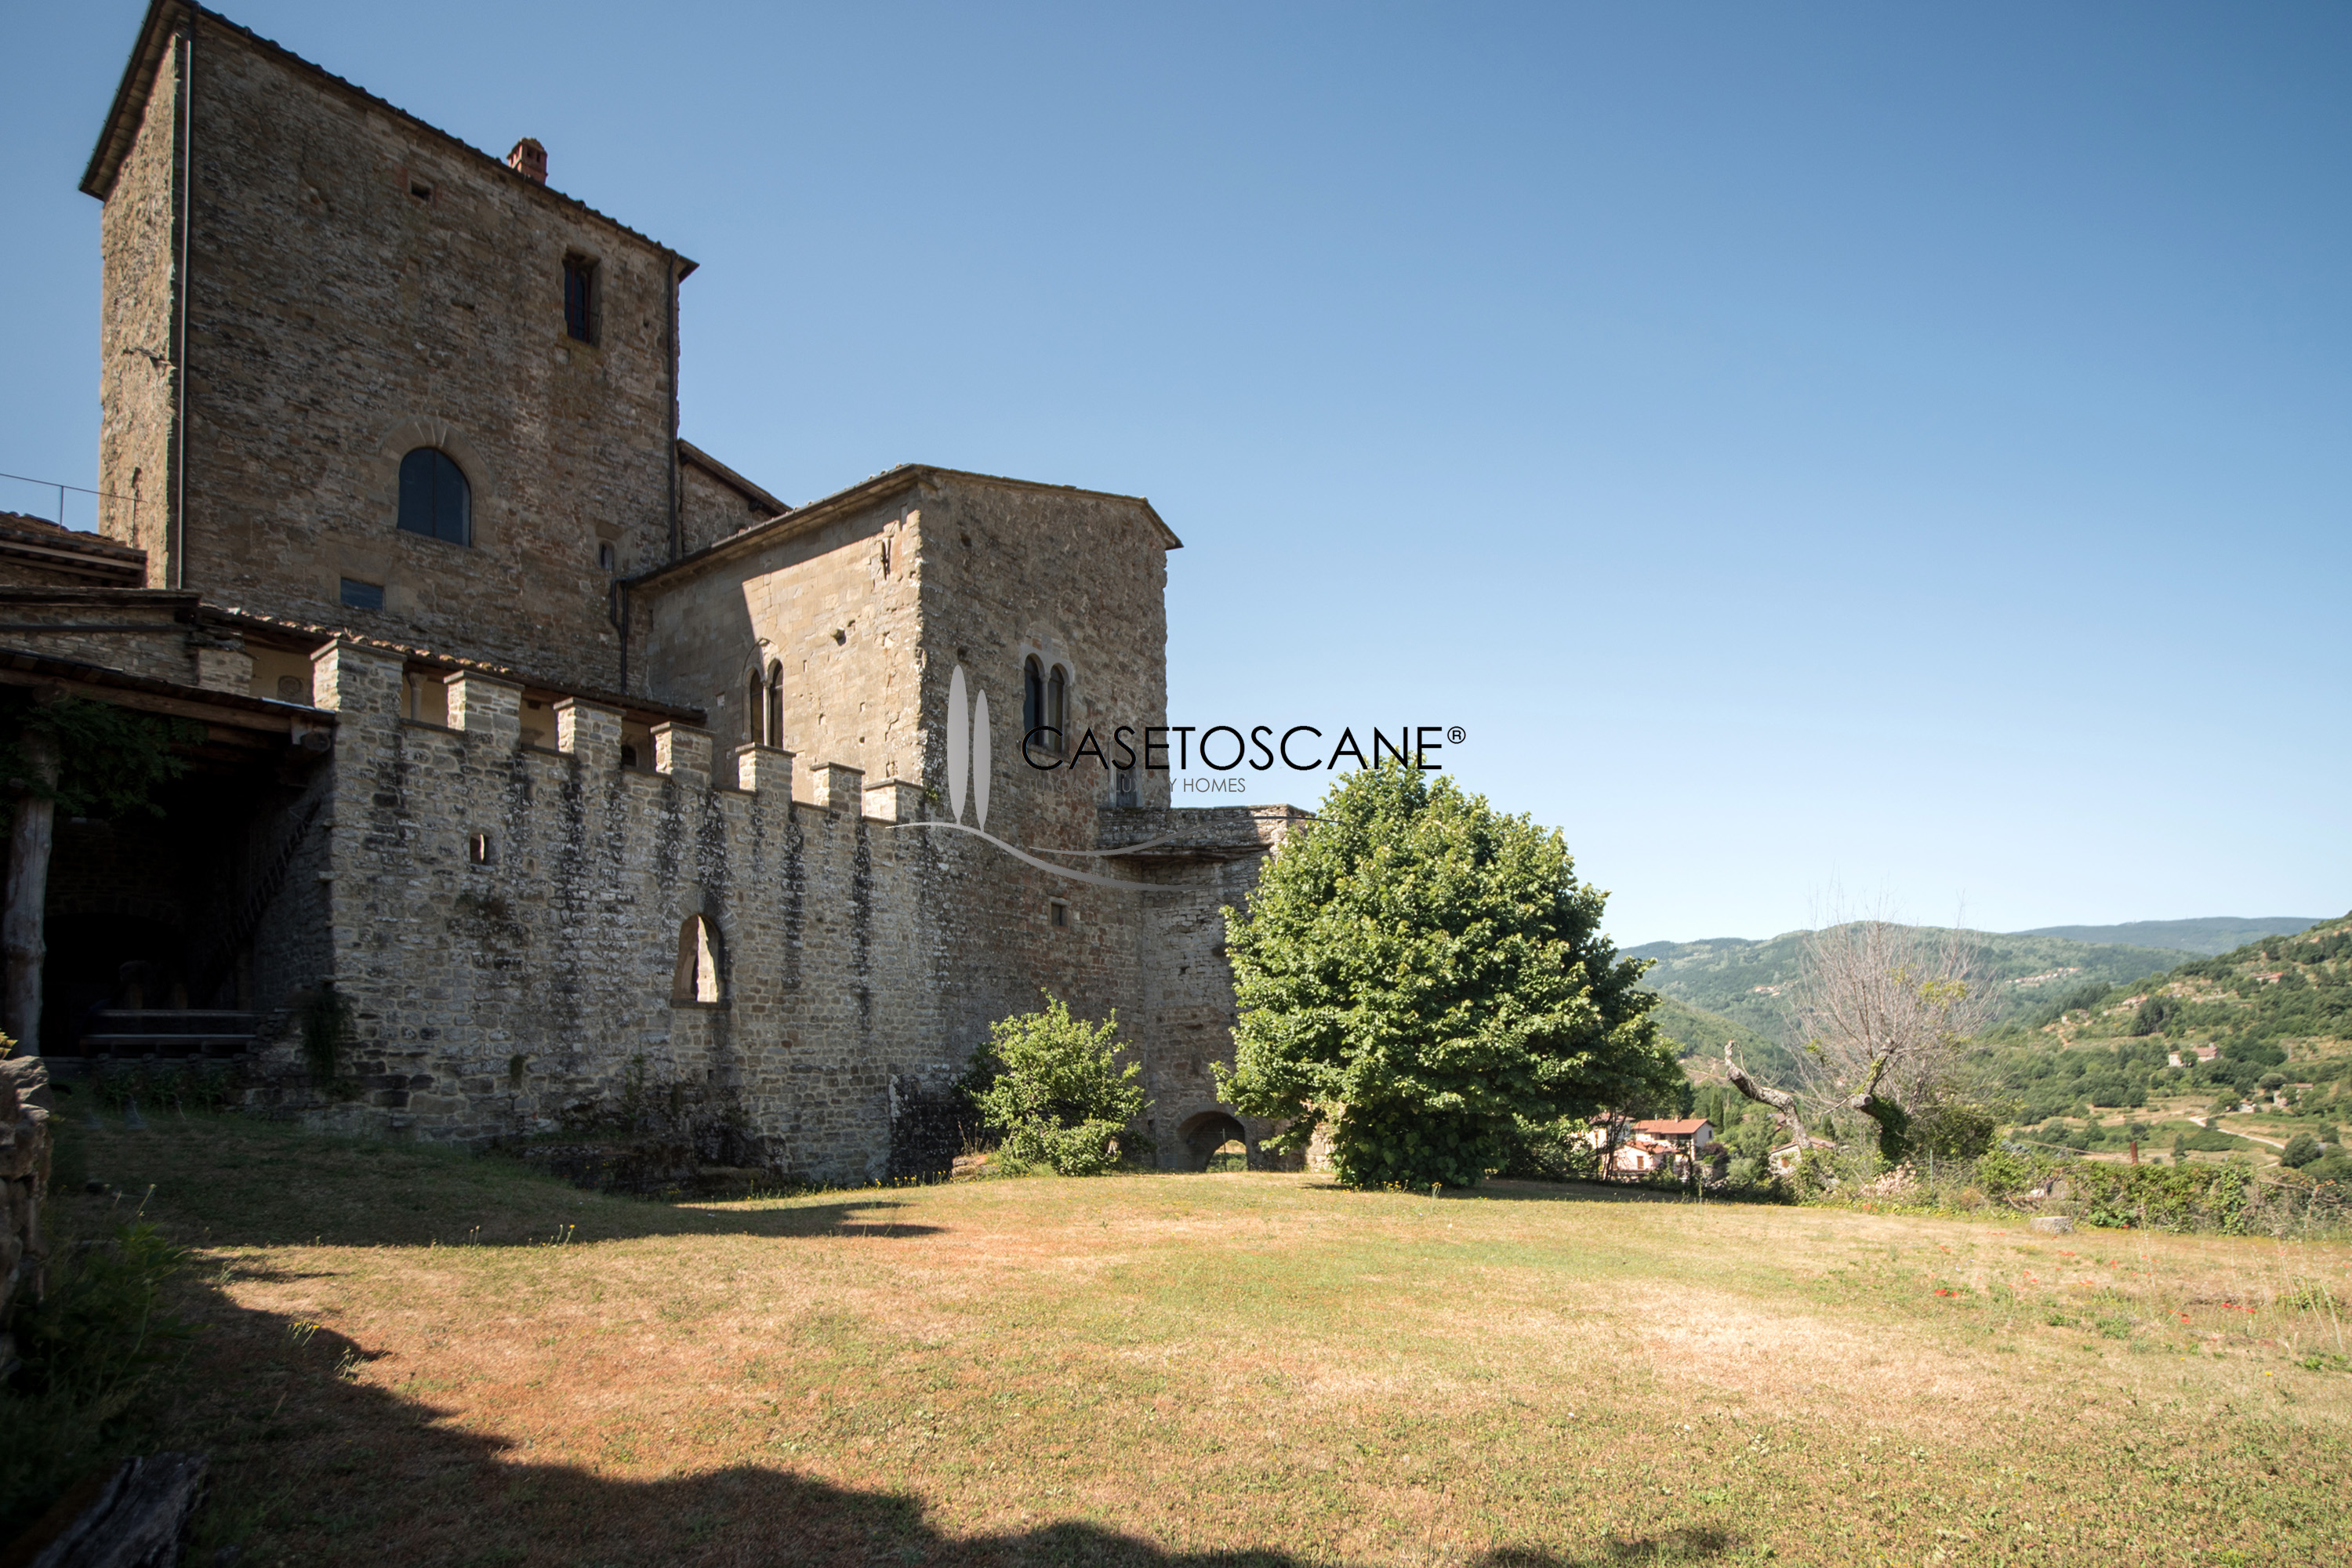 3077 - Antico castello dell'anno 1000 di mq.700 circa in buone condizioni in posizione dominante nella magnifica area del Casentino (AR).